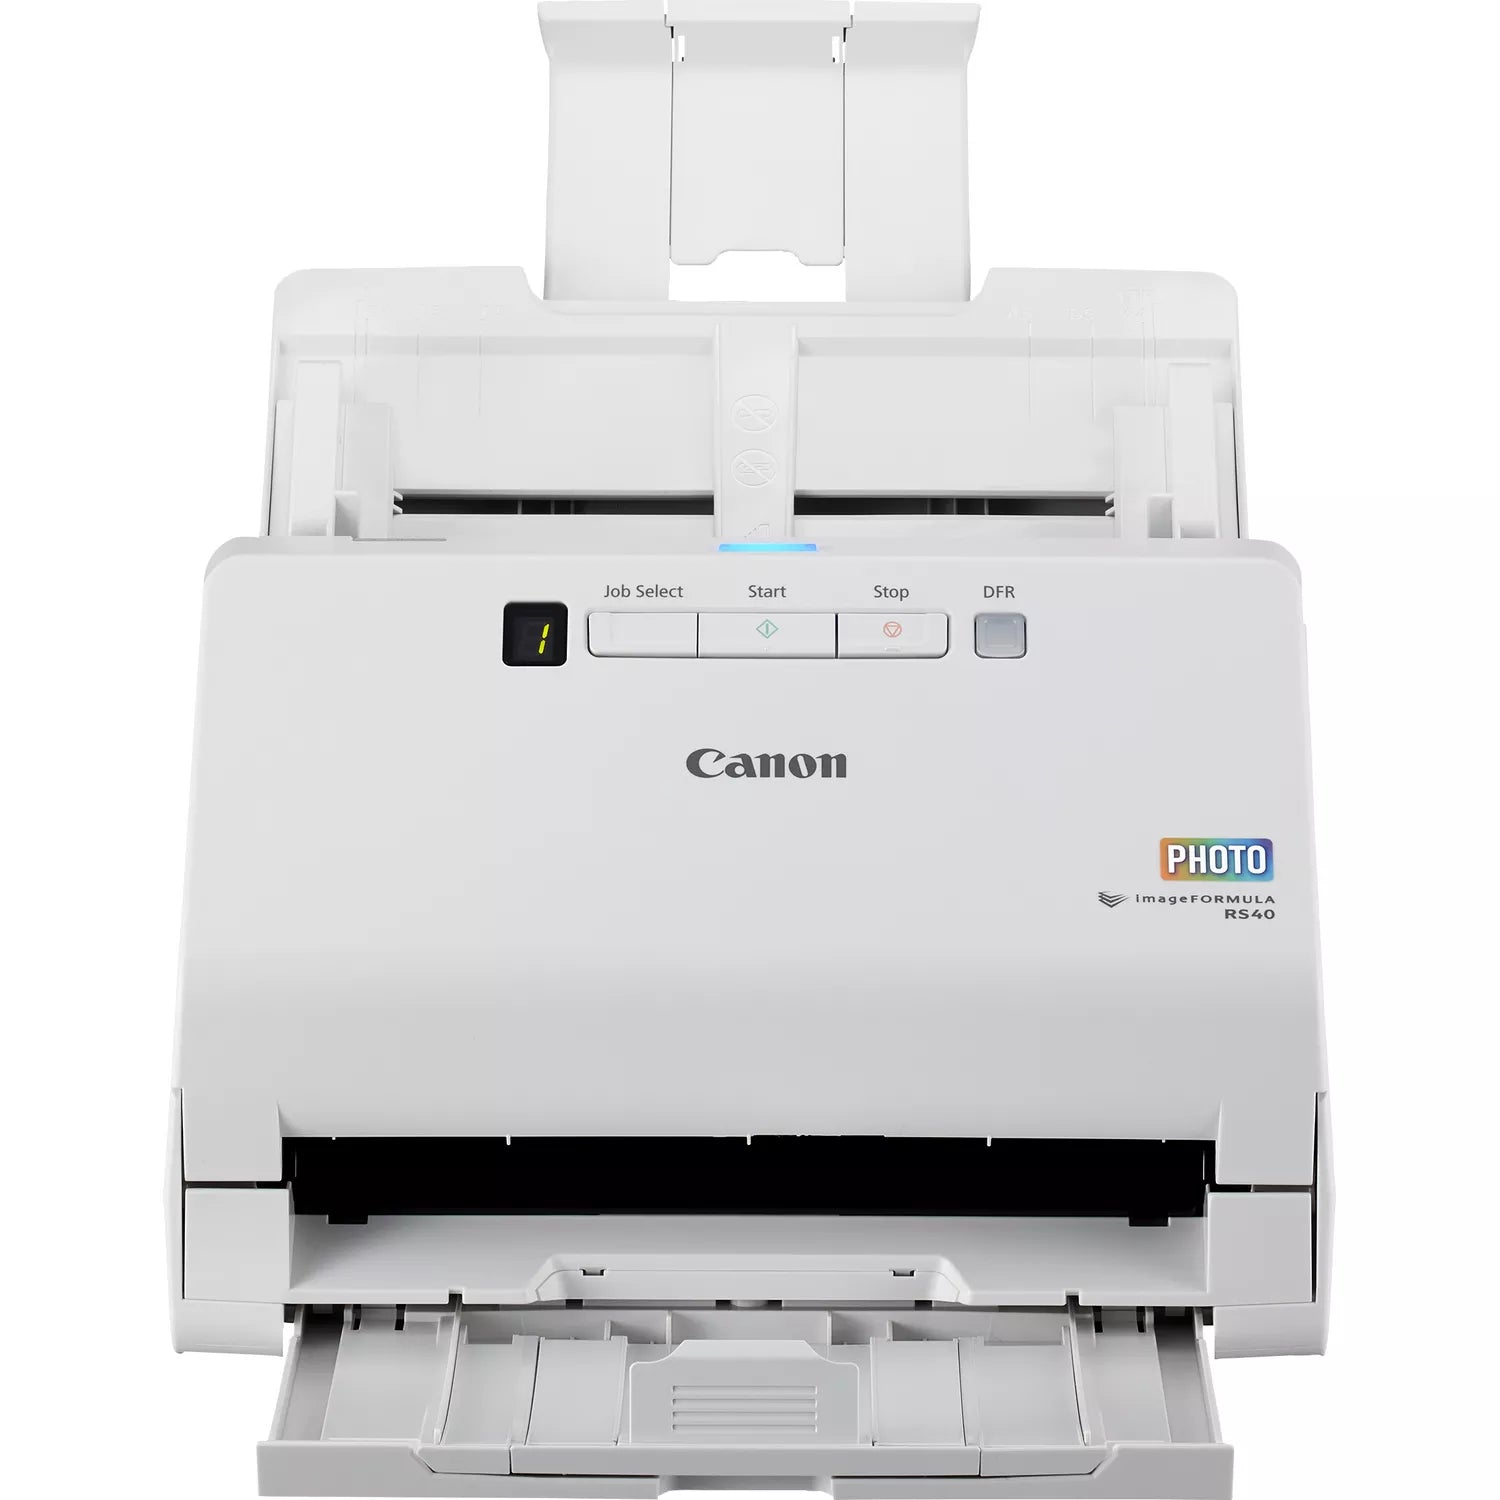 Canon imageFORMULA RS40 Sheet fed Scanner